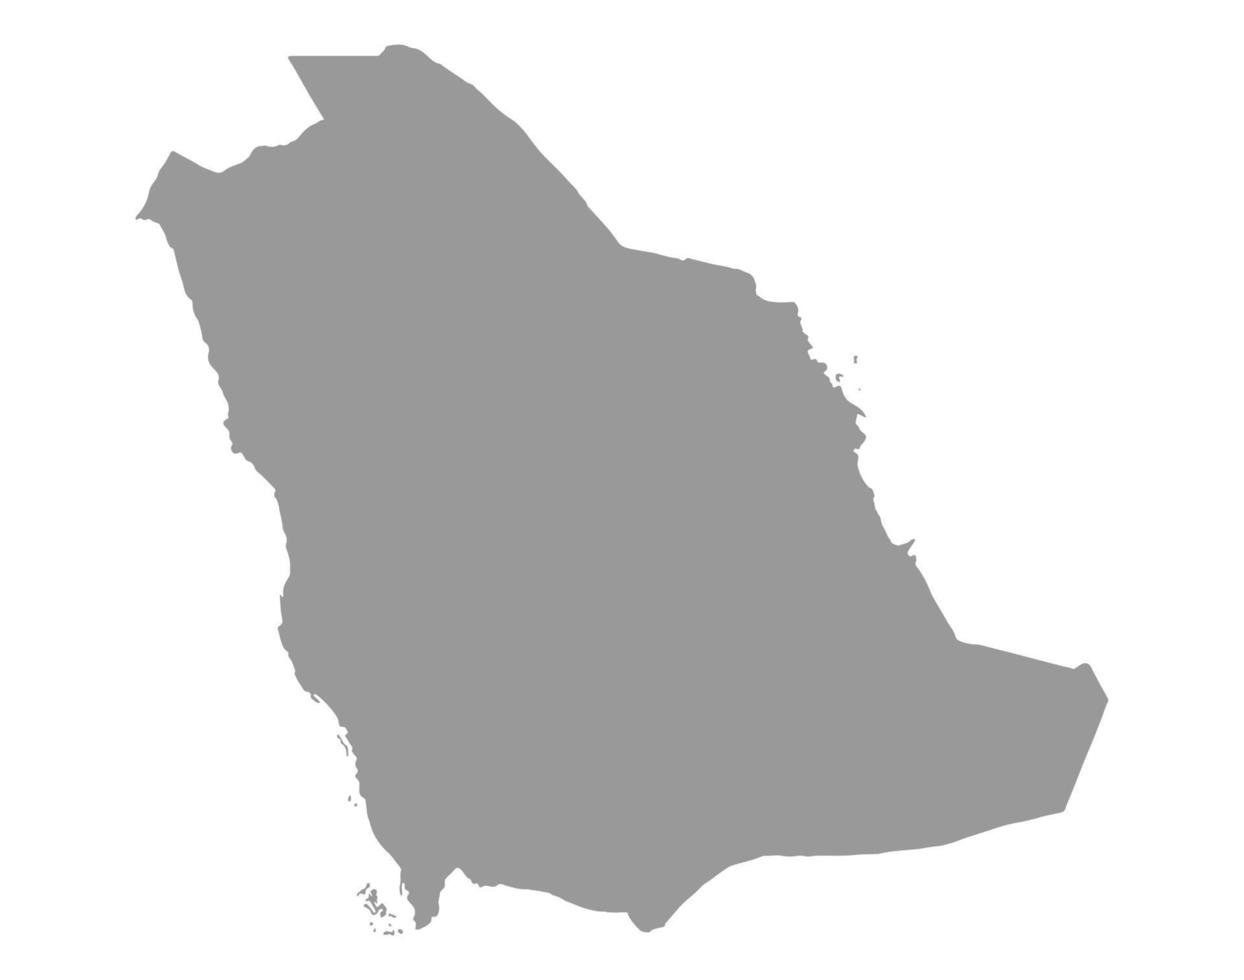 mapa de arabia saudita en png o fondo transparente.símbolo de arabia saudita.ilustración vectorial vector